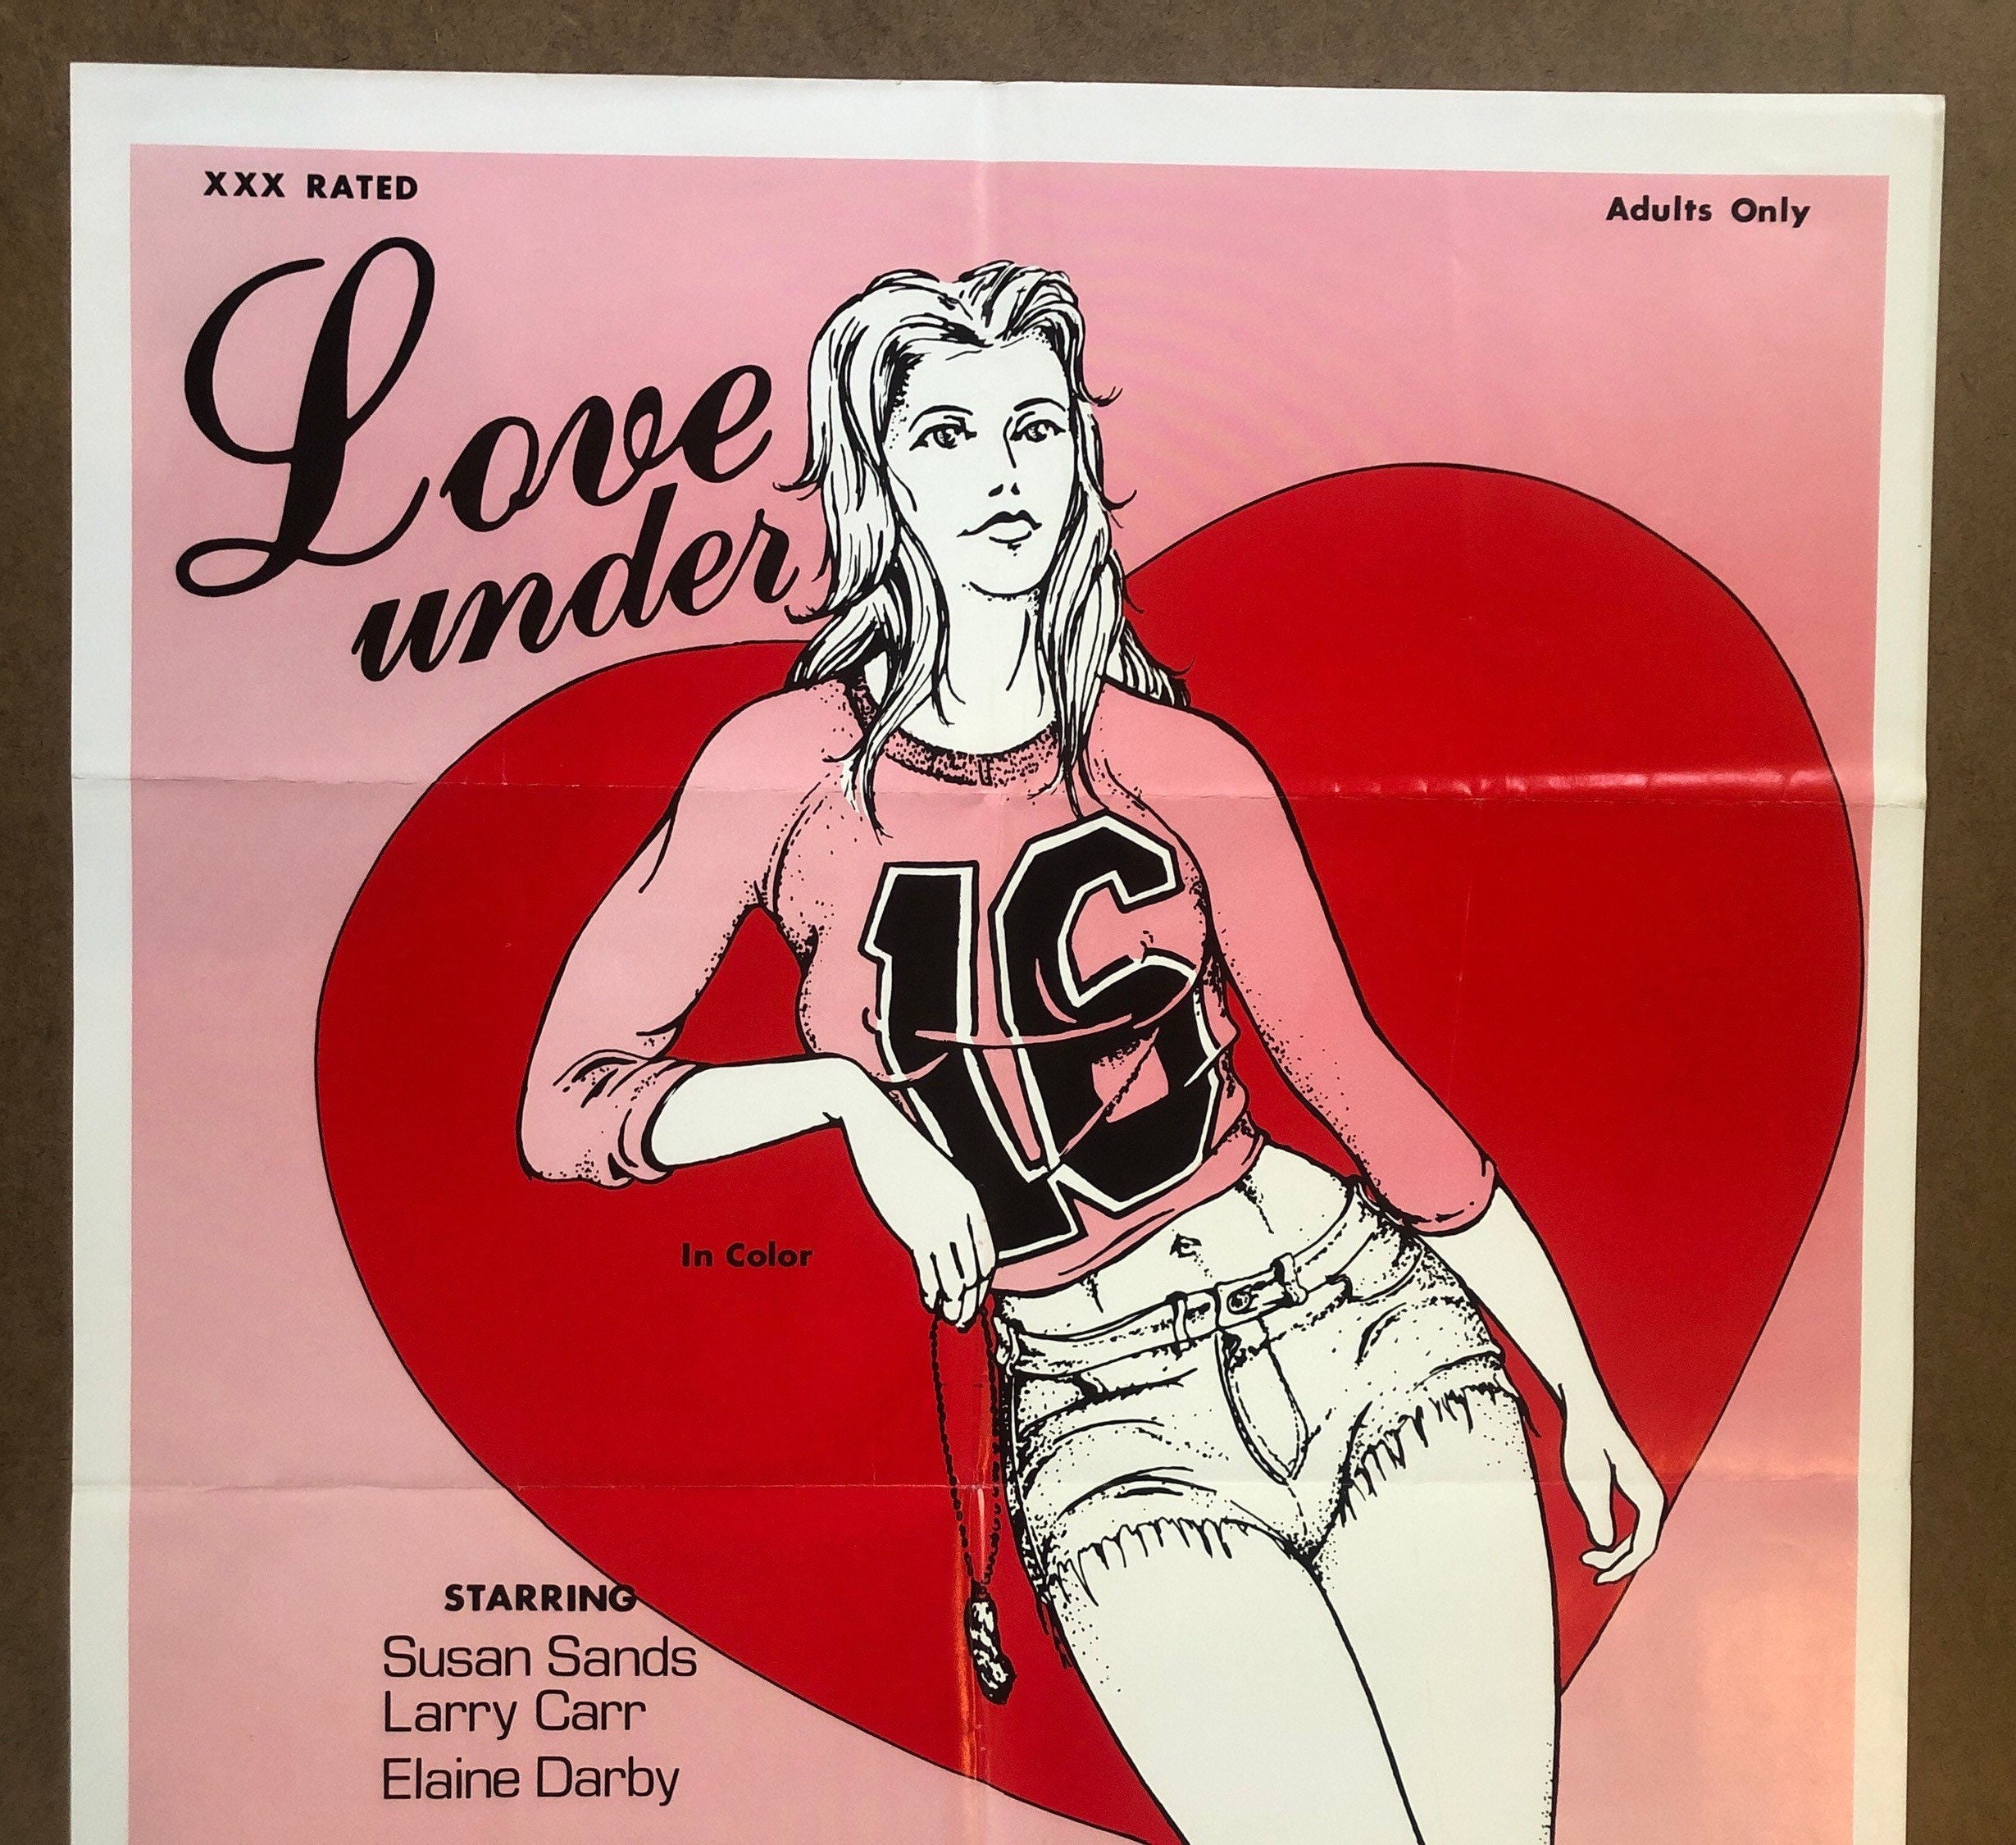 Love Under 16 Vintage Xxx Movie Poster Sixteen 1970s Adult - Etsy Sweden